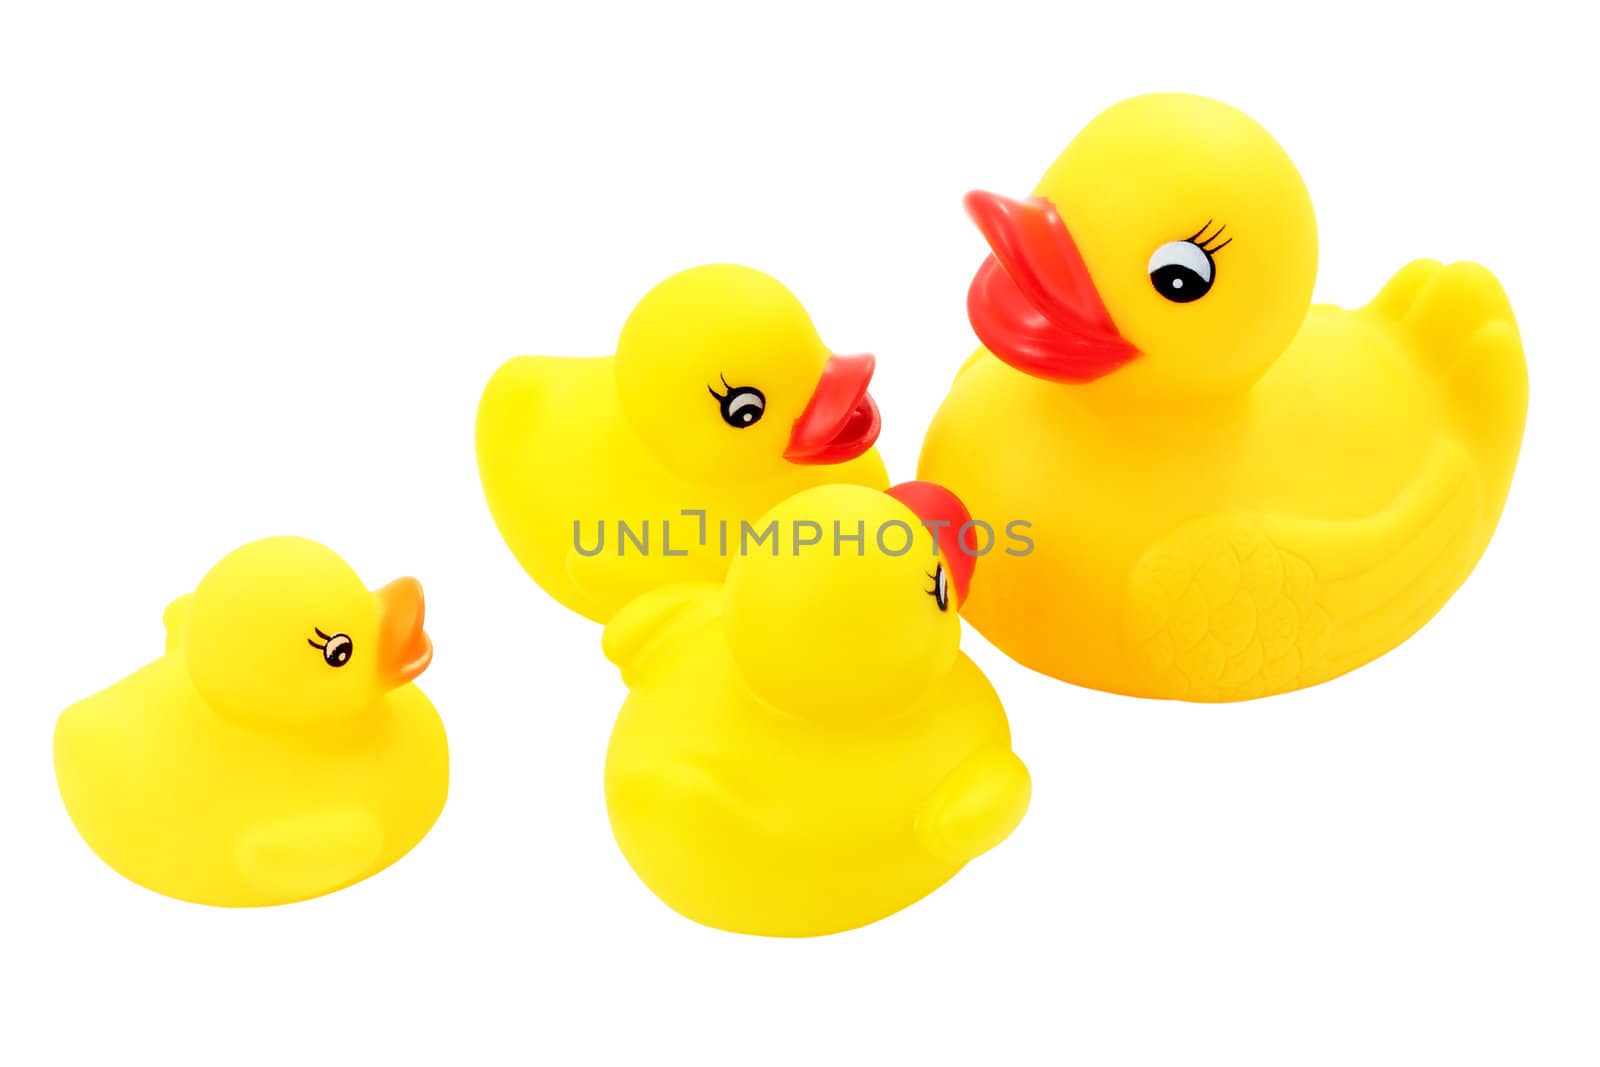 Family of ducks by croreja